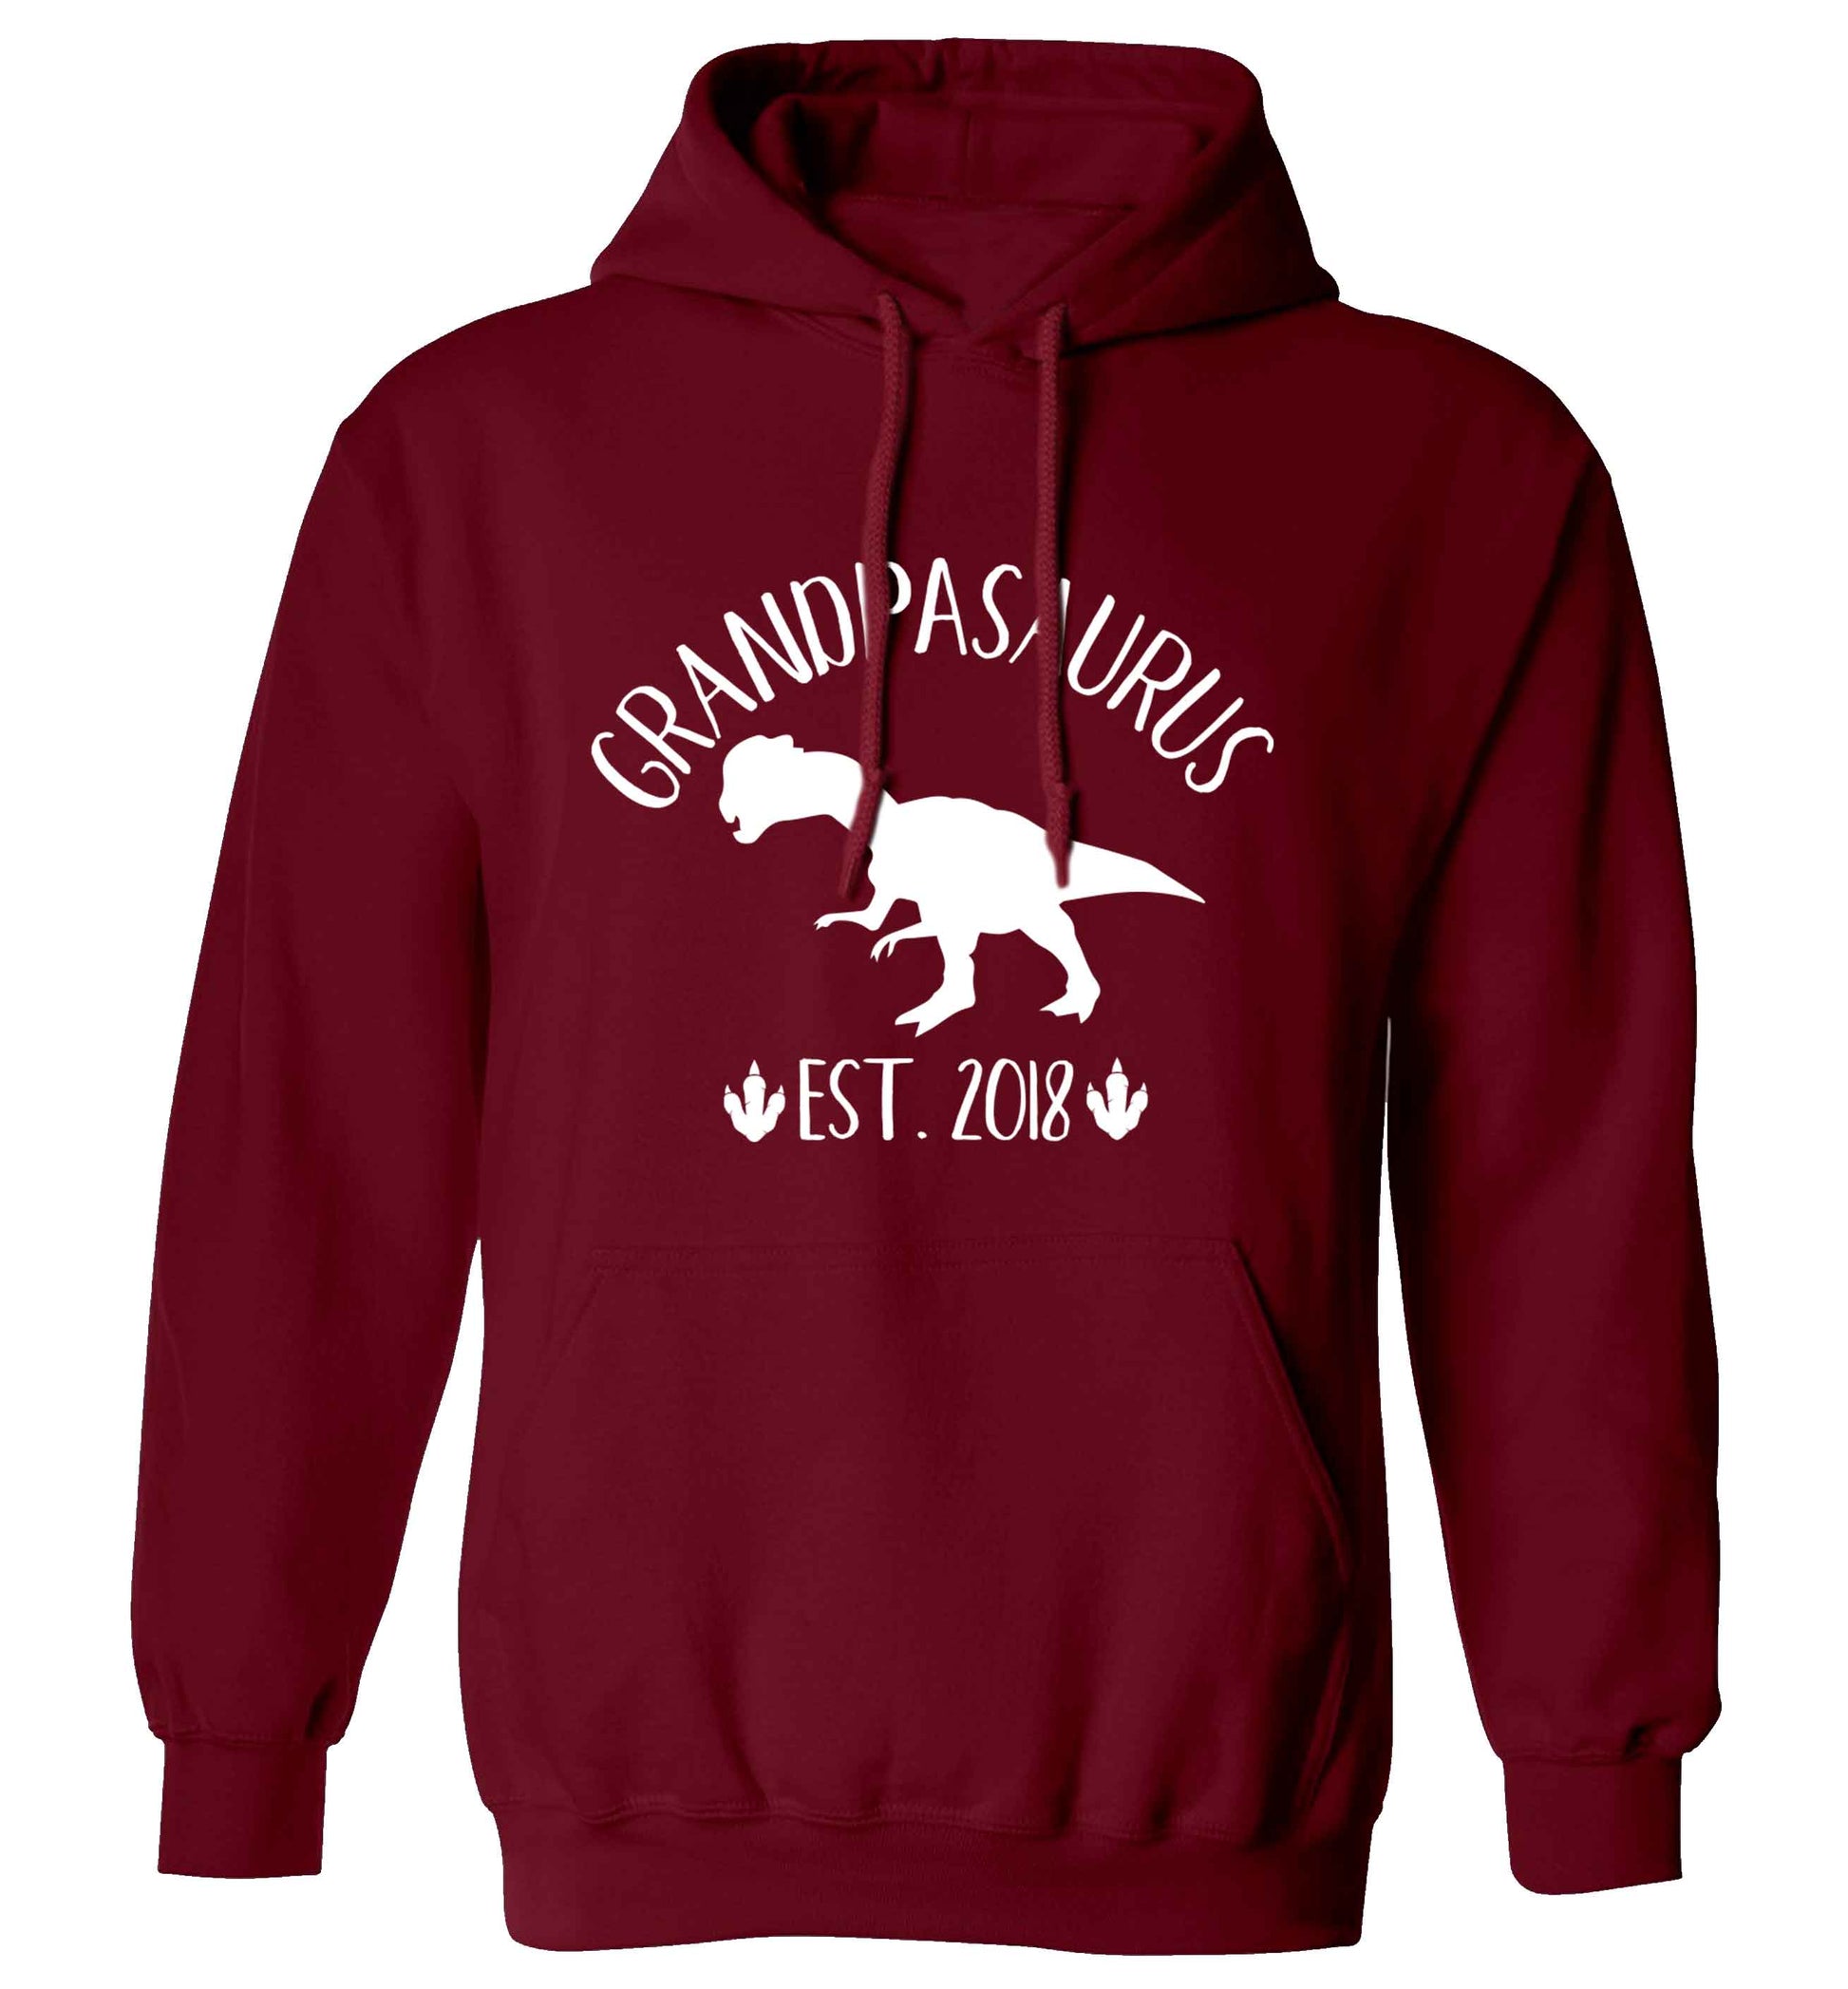 Personalised grandpasaurus since (custom date) adults unisex maroon hoodie 2XL